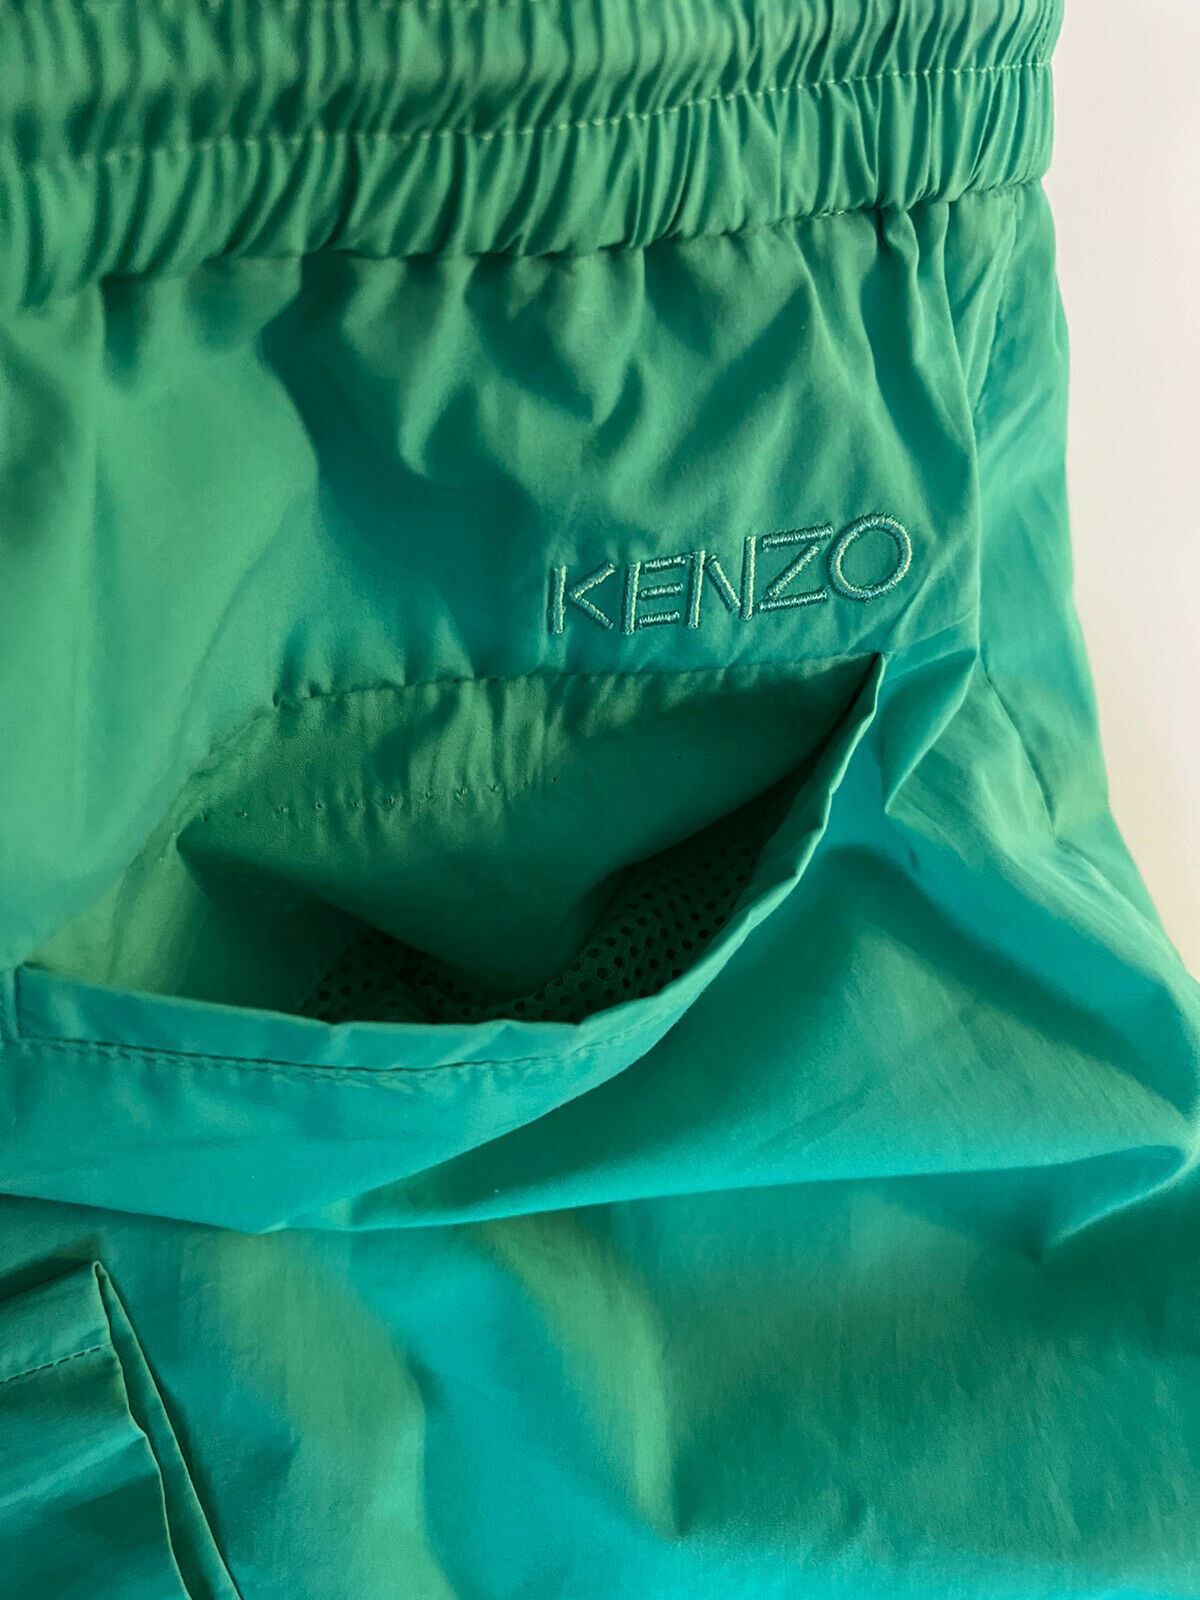 СЗТ 280 долларов США Kenzo Зауженные укороченные мужские зеленые повседневные брюки из мягкого хлопка среднего размера